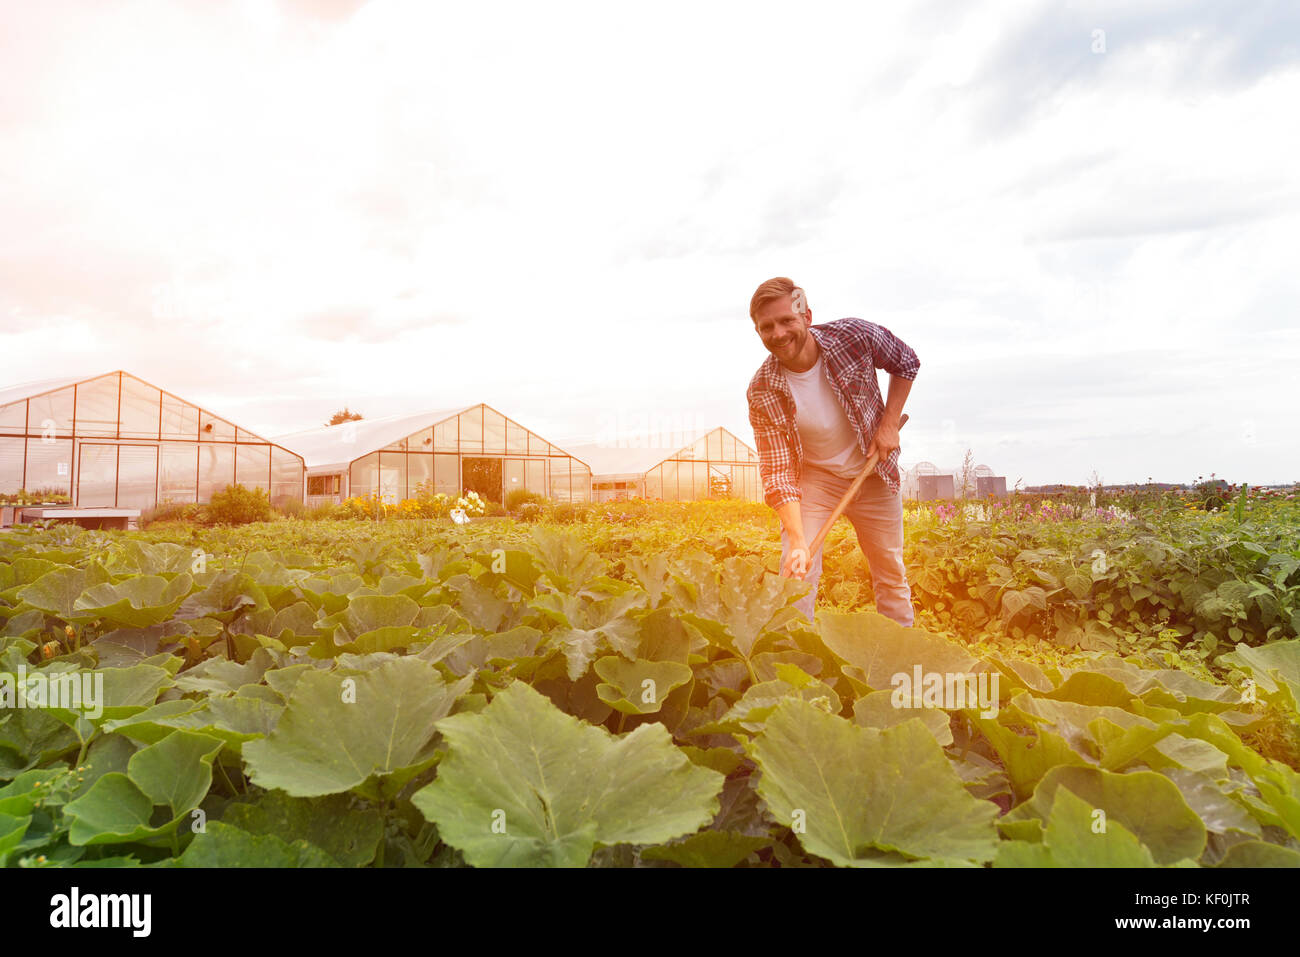 Agricoltore bei der Arbeit auf dem Feld in der Landwirtschaft - Gemüseanbau Foto Stock